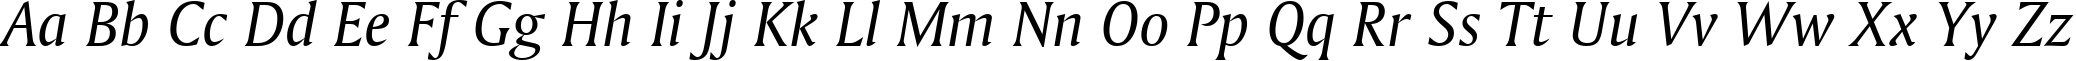 Пример написания английского алфавита шрифтом Amerigo Italic BT